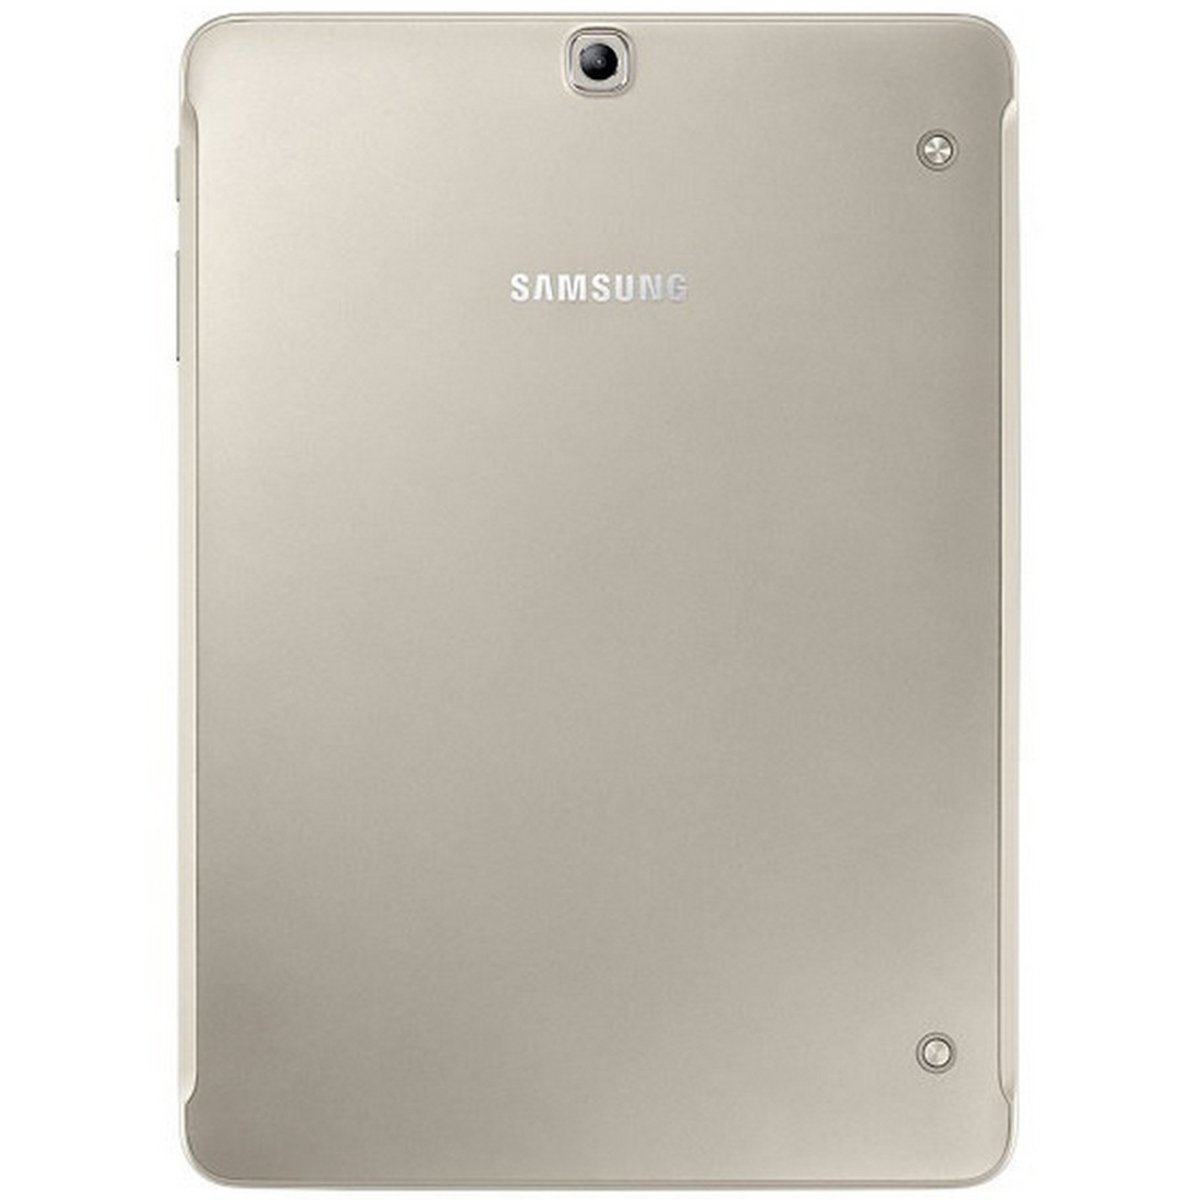 Samsung Galaxy Tab S2 T819 9.7inch 4G 32GB Gold